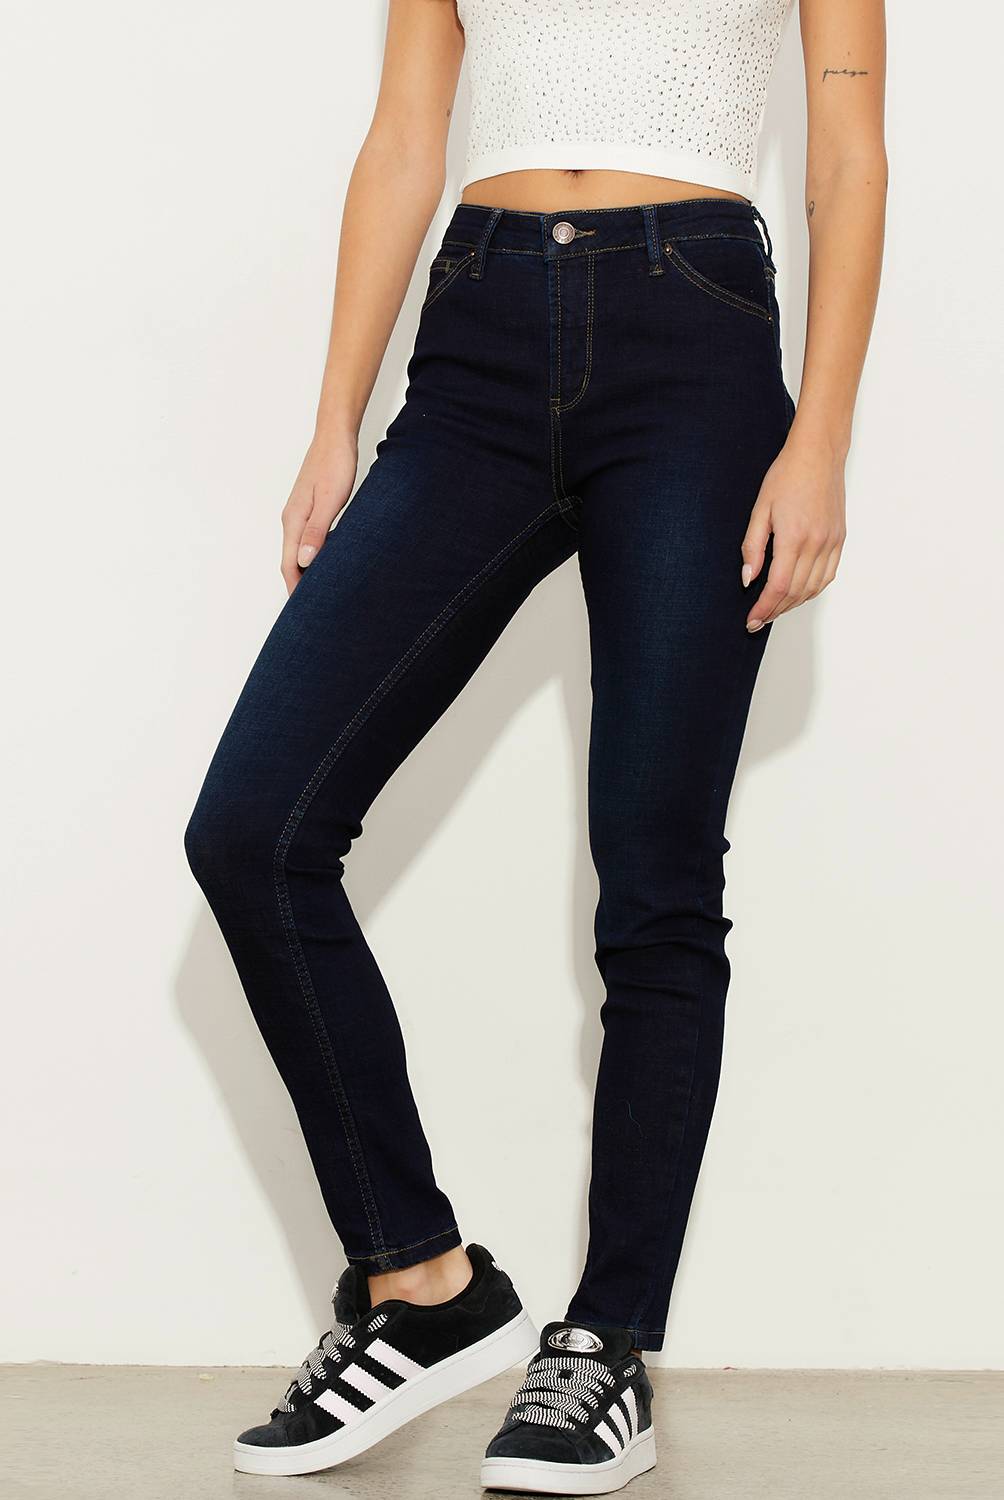 AMERICANINO - Jeans Skinny Tiro Medio Mujer Americanino